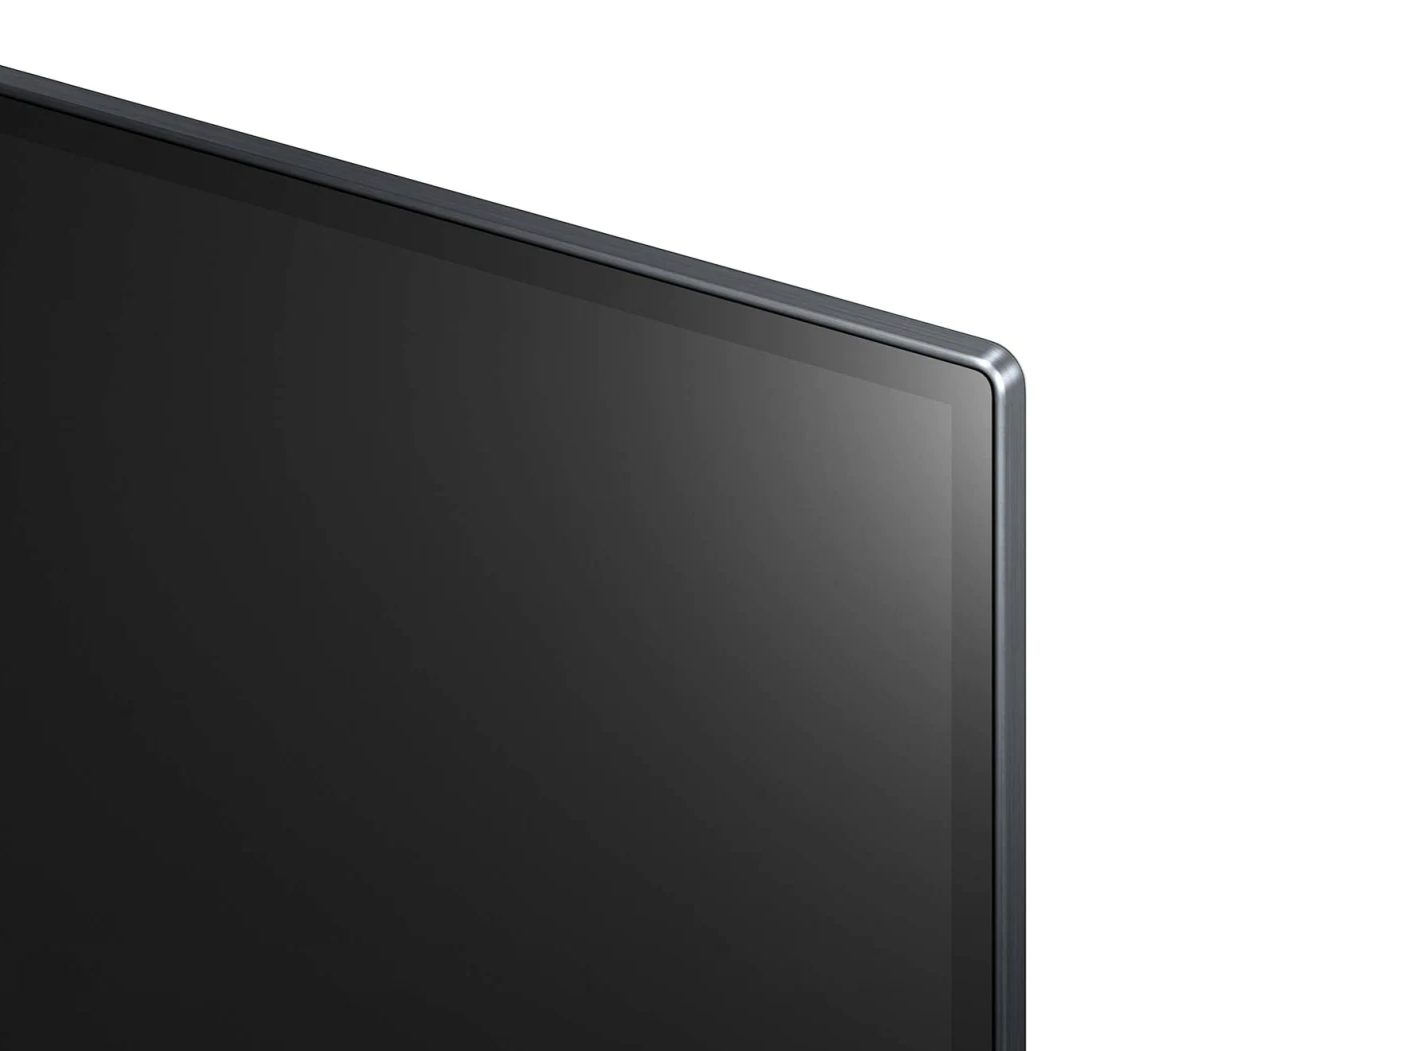 LG 55G1 OLED EVO televízió jobb felső kerete ráközelített nézetben